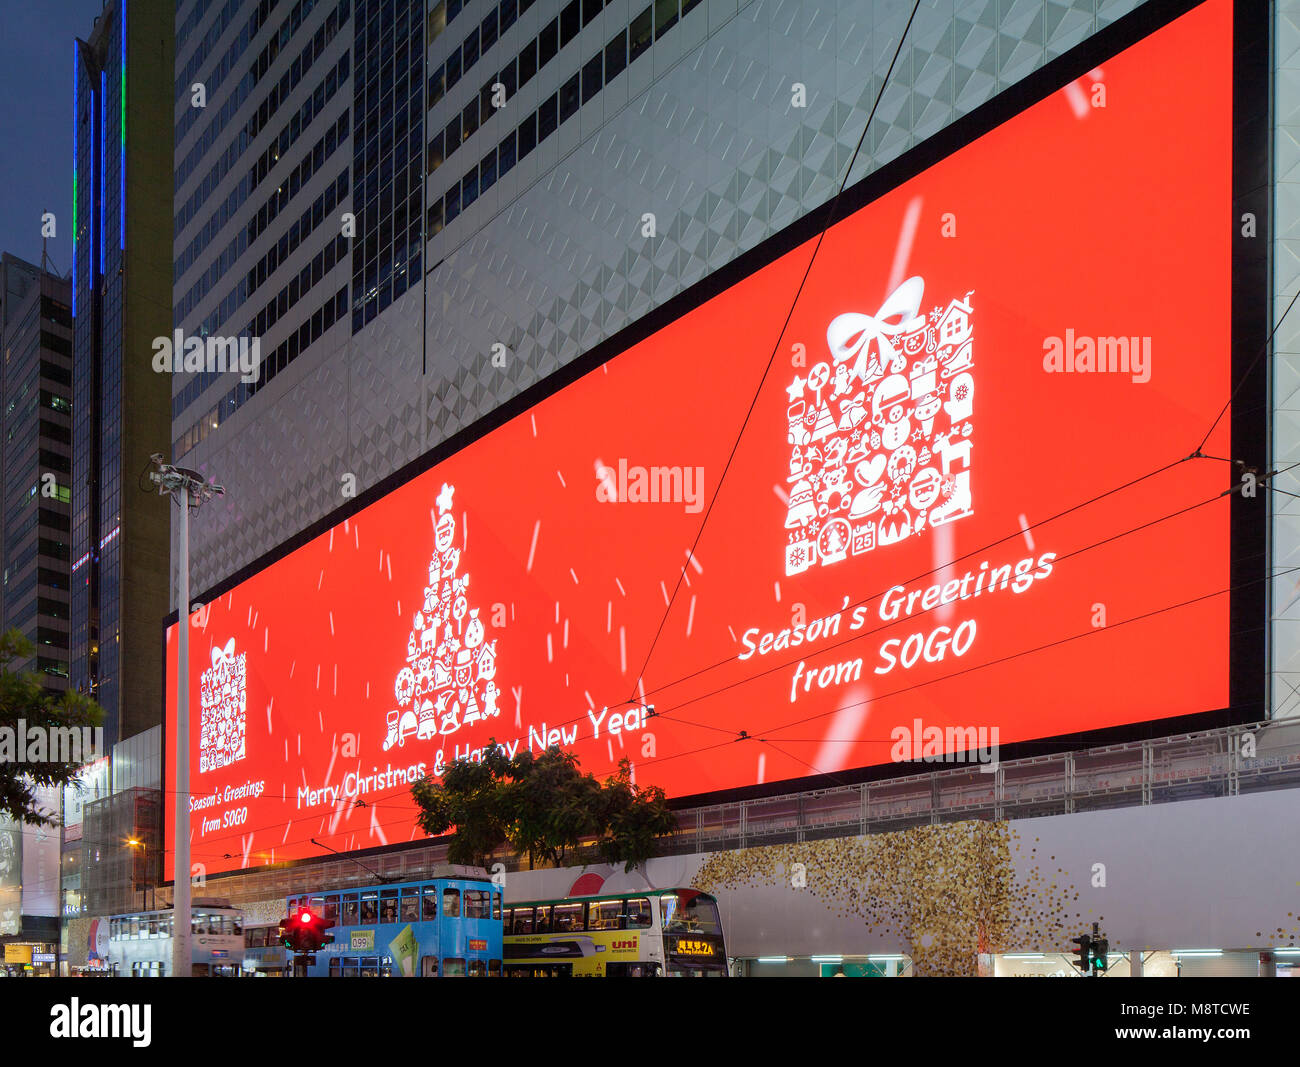 Screen displaying Christmas greetings. Sogo Mall, Hong Kong, Hong Kong. Architect: Mitsubishi Electric, 2017. Stock Photo